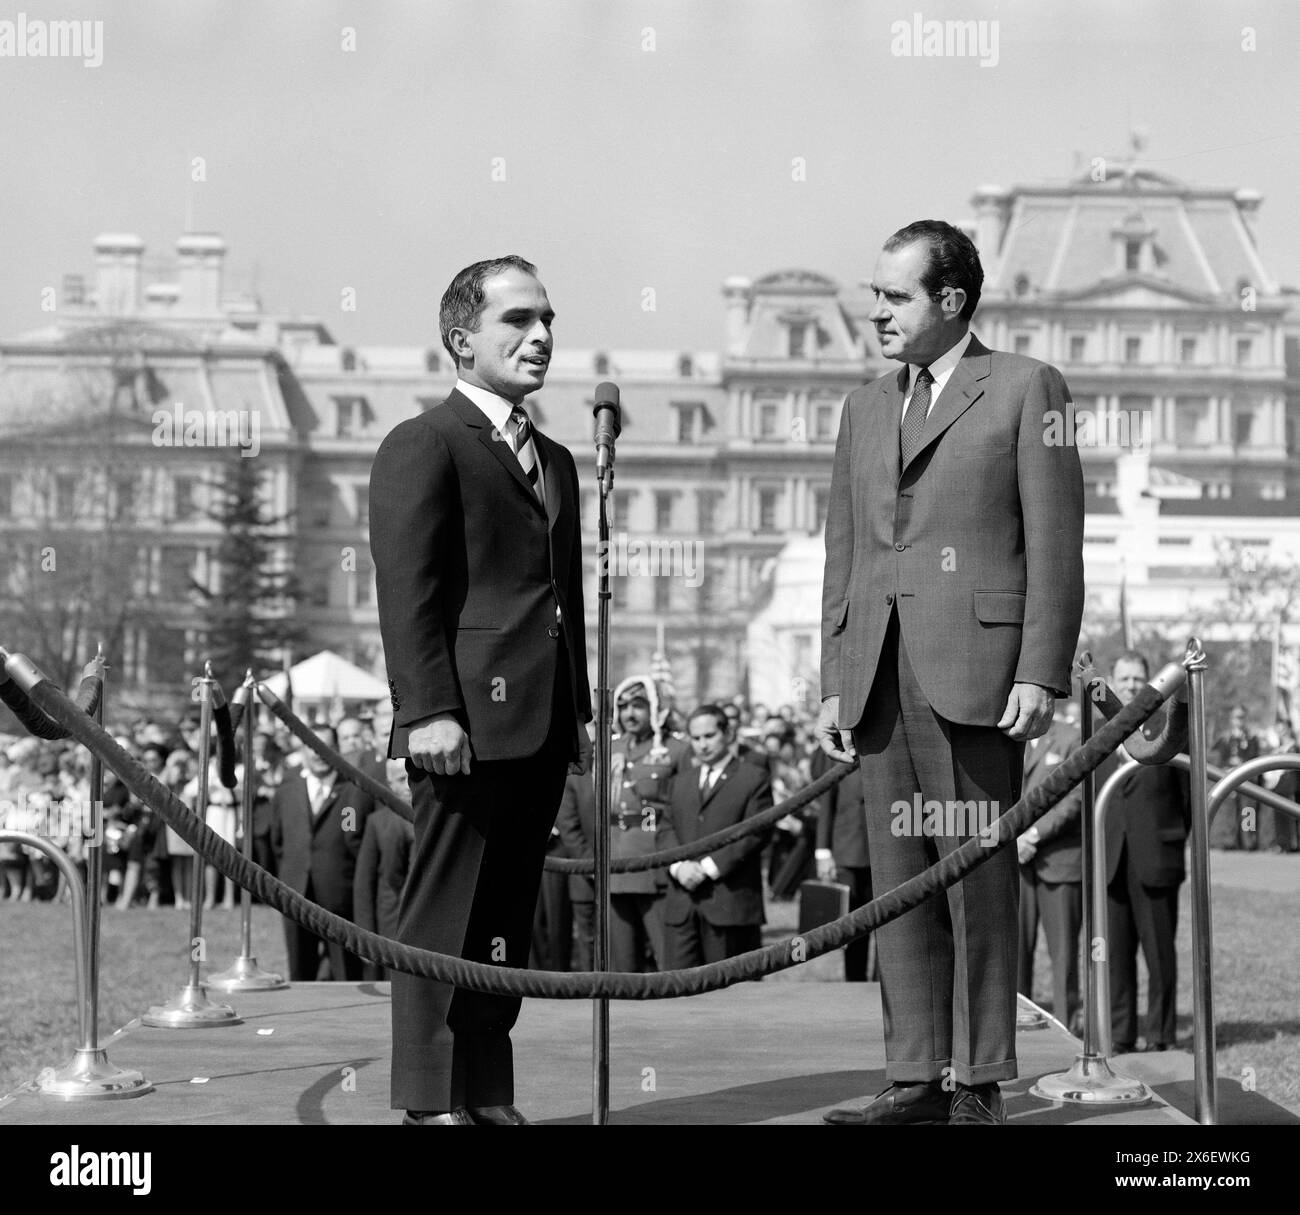 Le président américain Richard Nixon et le roi Hussein de Jordanie debout sur une plate-forme surélevée devant le Old Executive Office Building, Washington, D.C. (États-Unis), Robert H. McNeill, collection de la famille Robert H. McNeill, 8 avril 1969 Banque D'Images